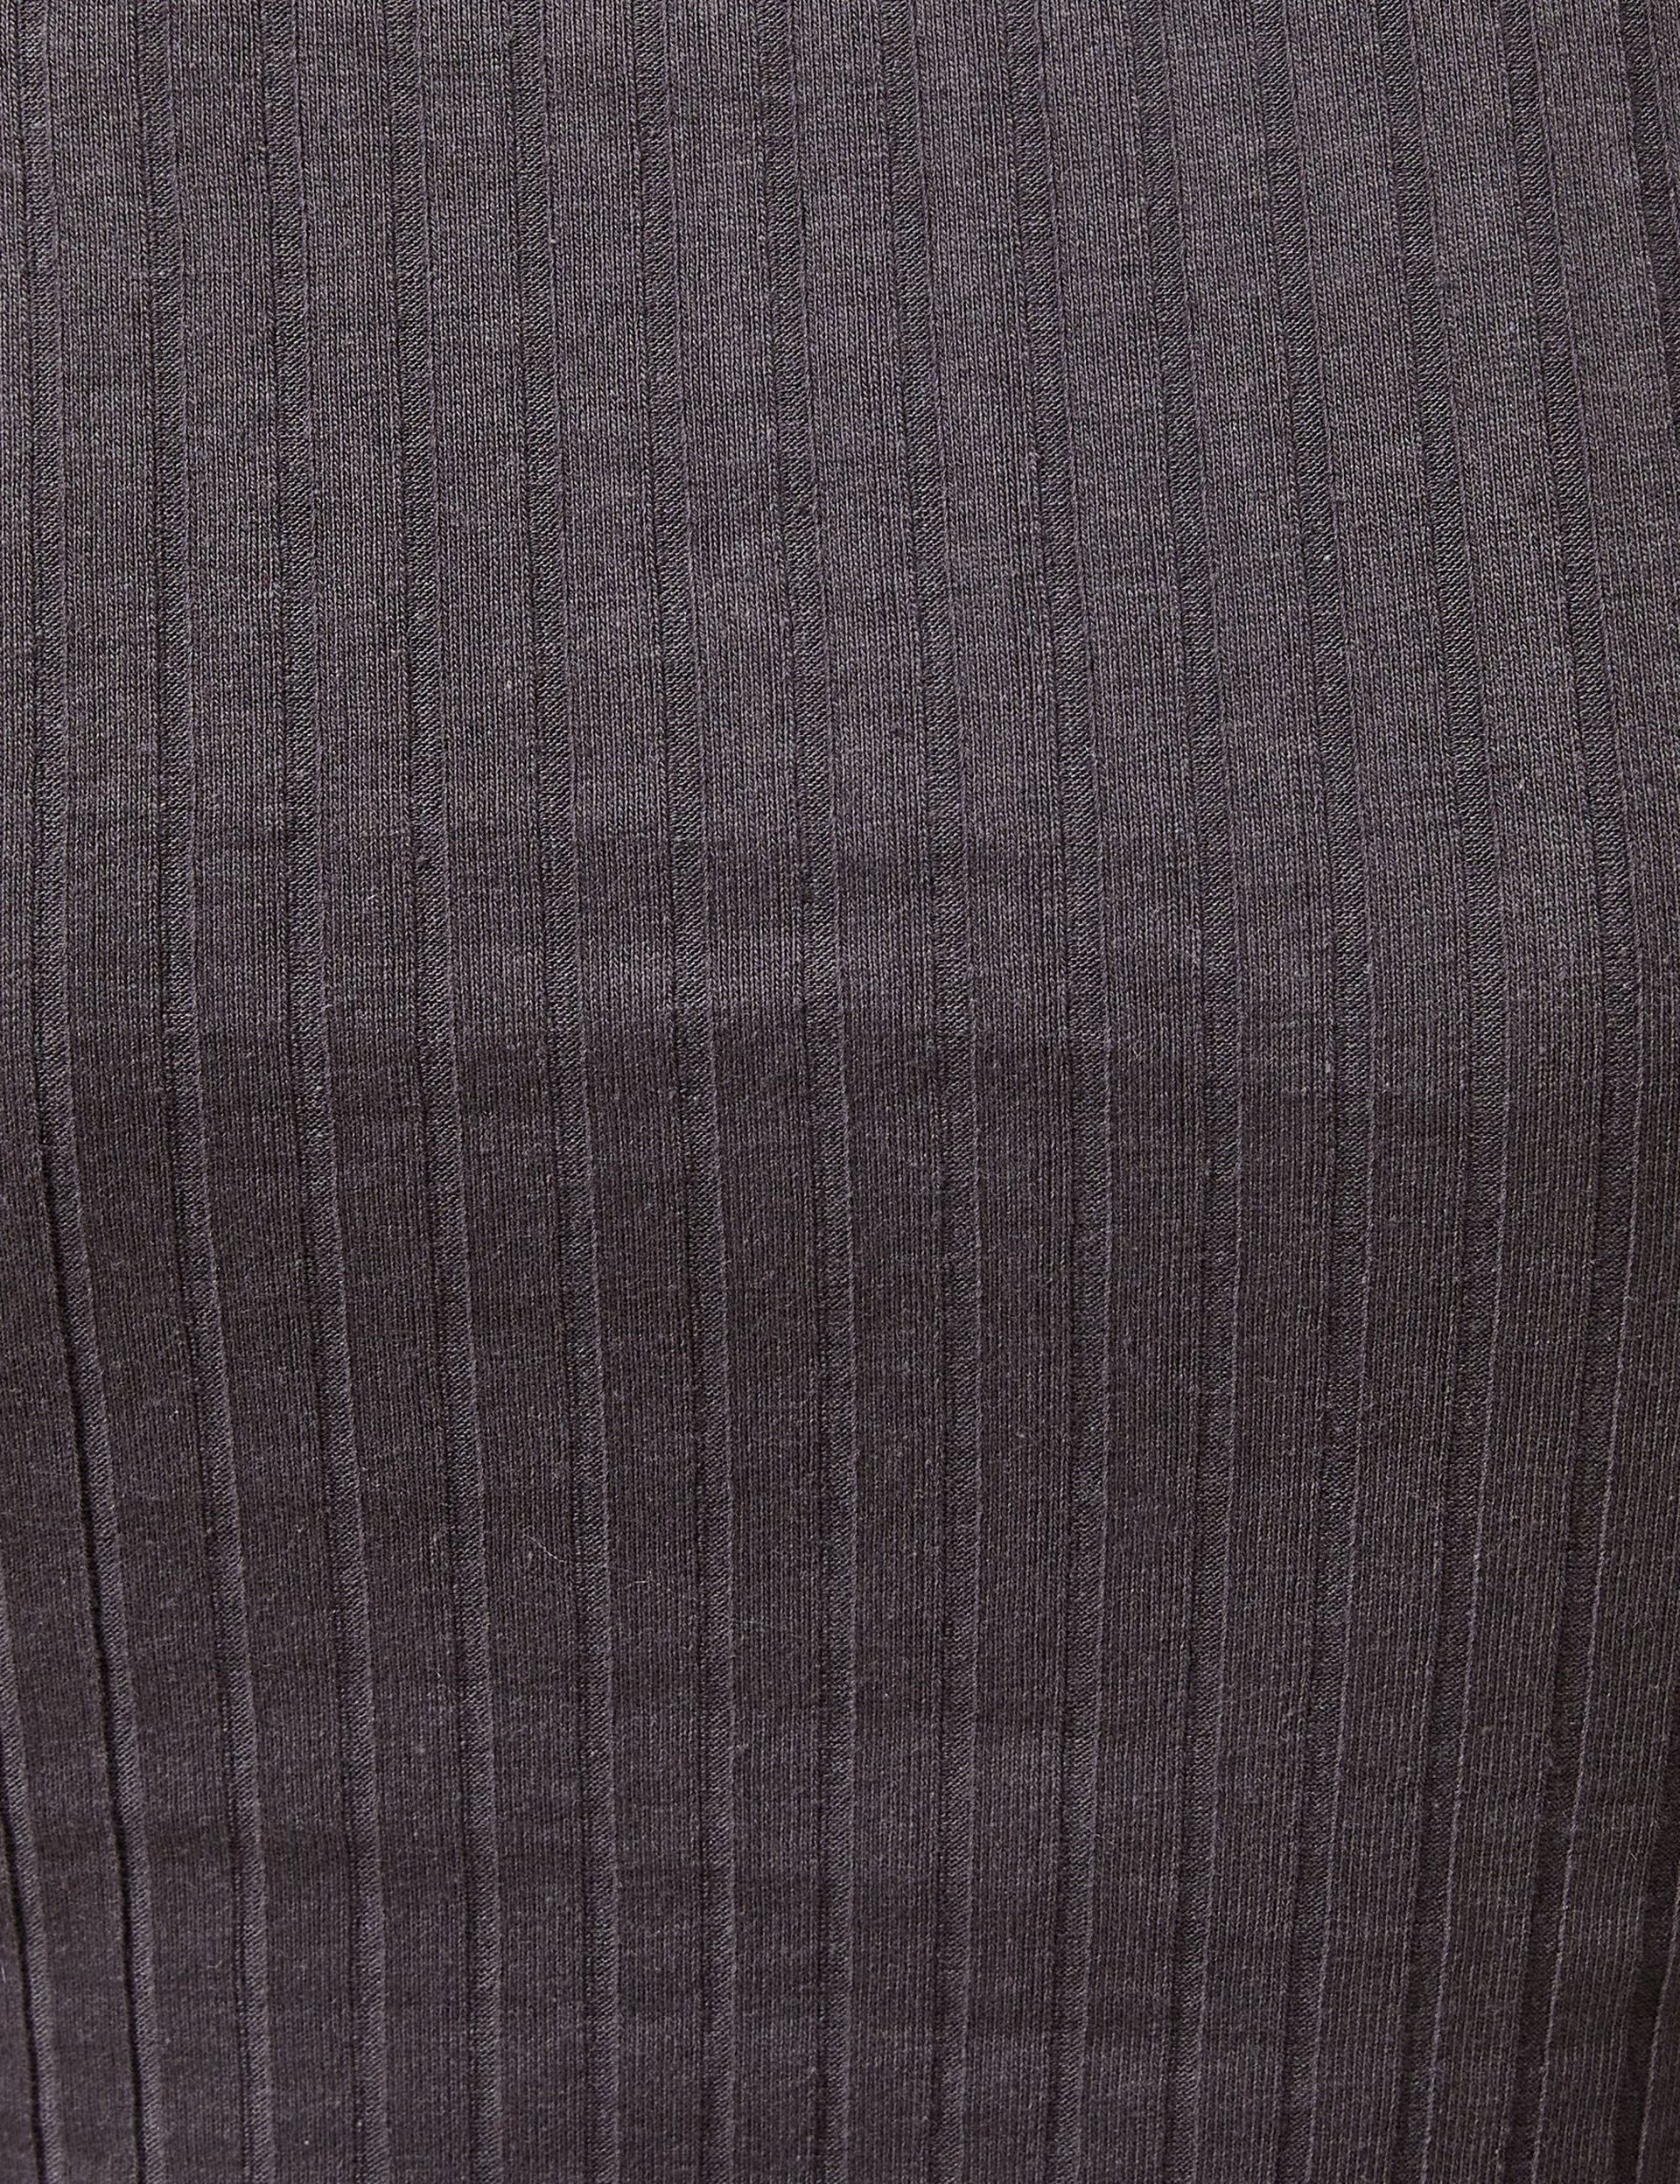 T-shirt manches longues côtelé gris foncé